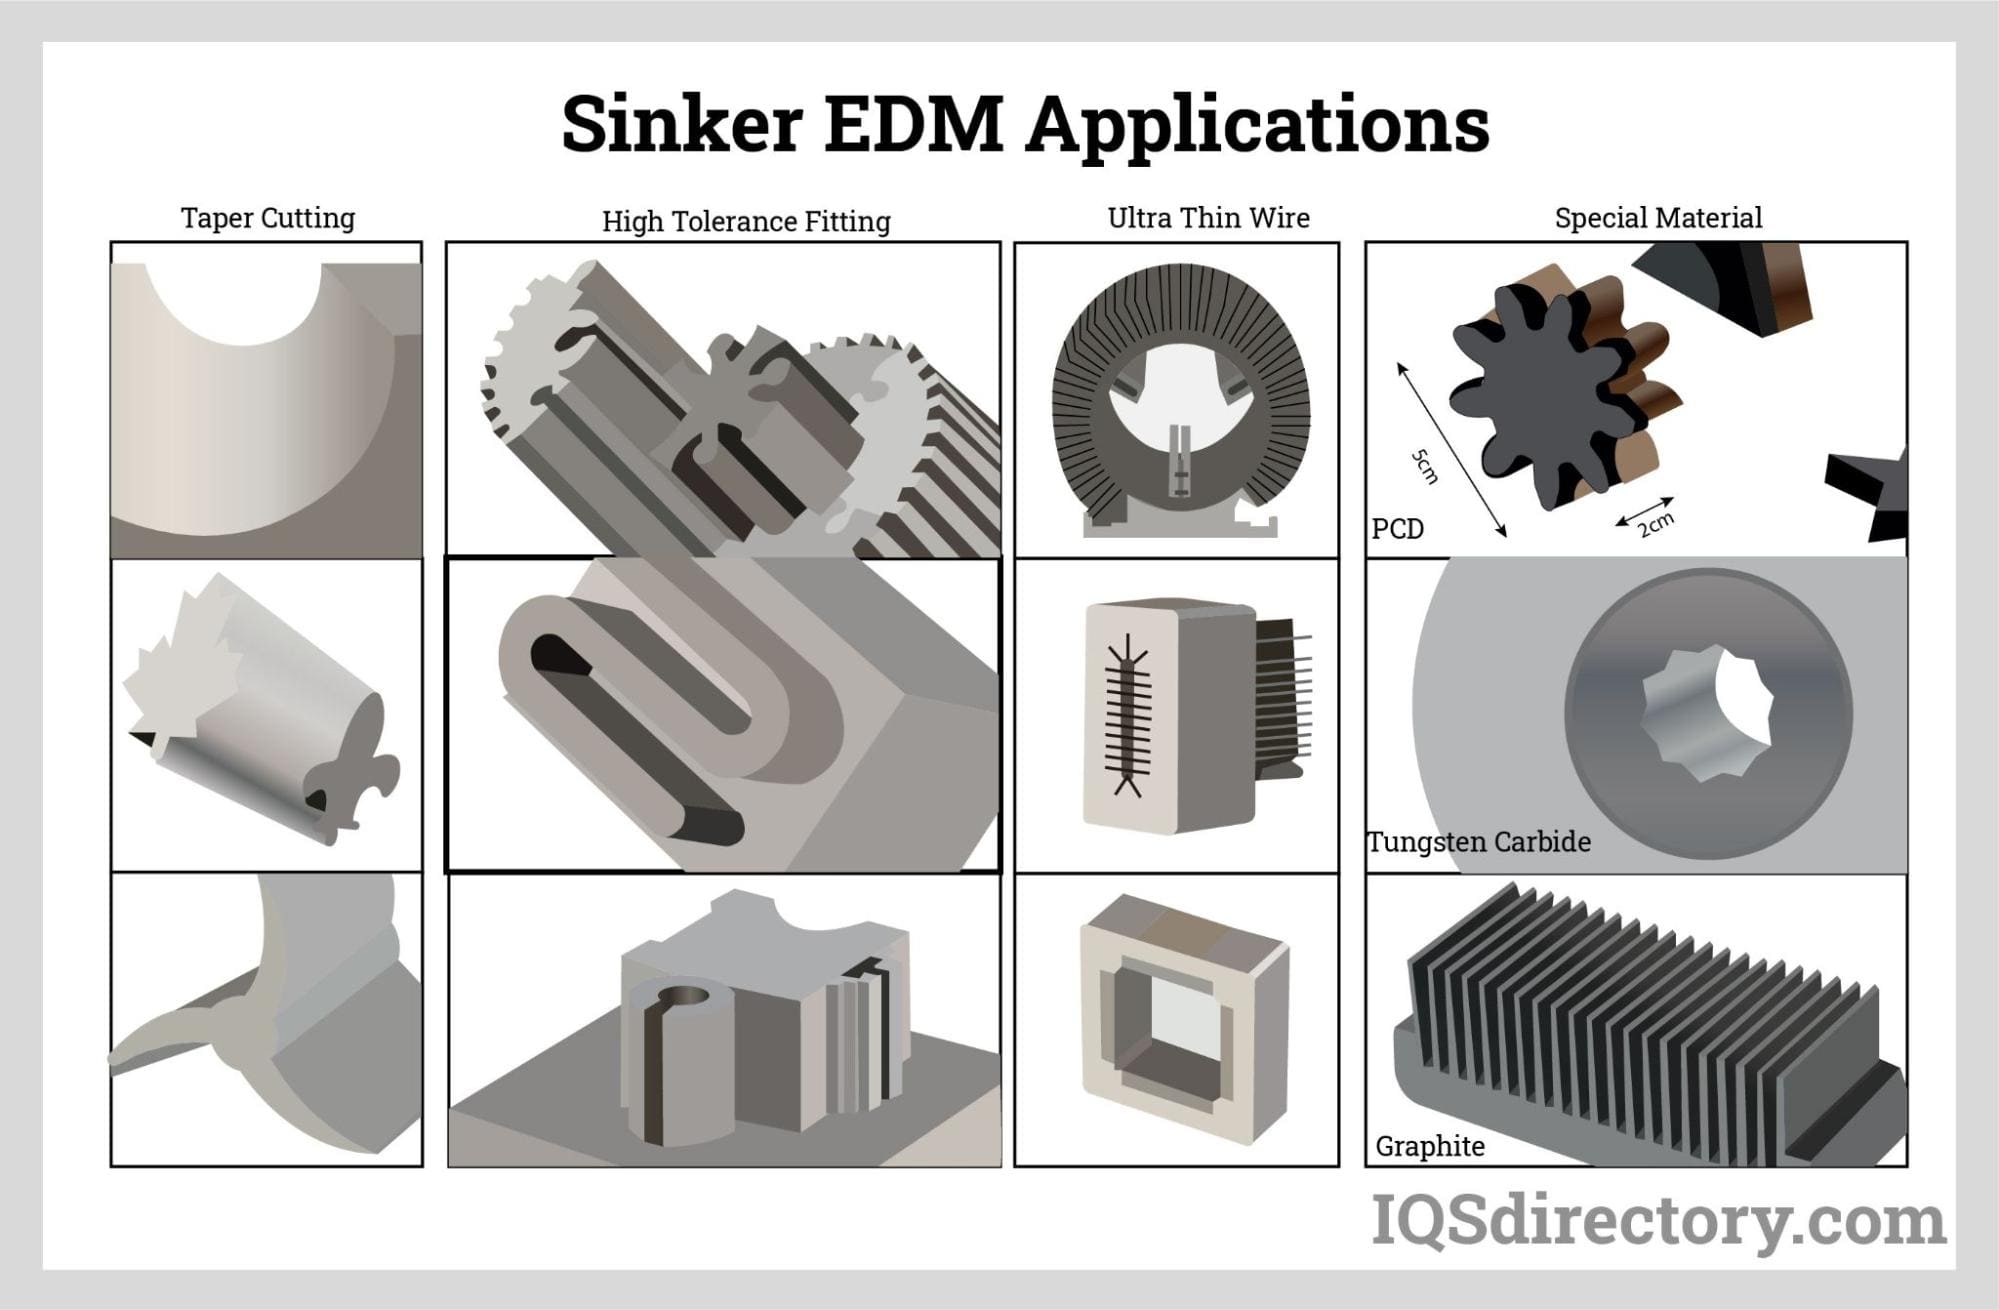 Sinker EDM Applications